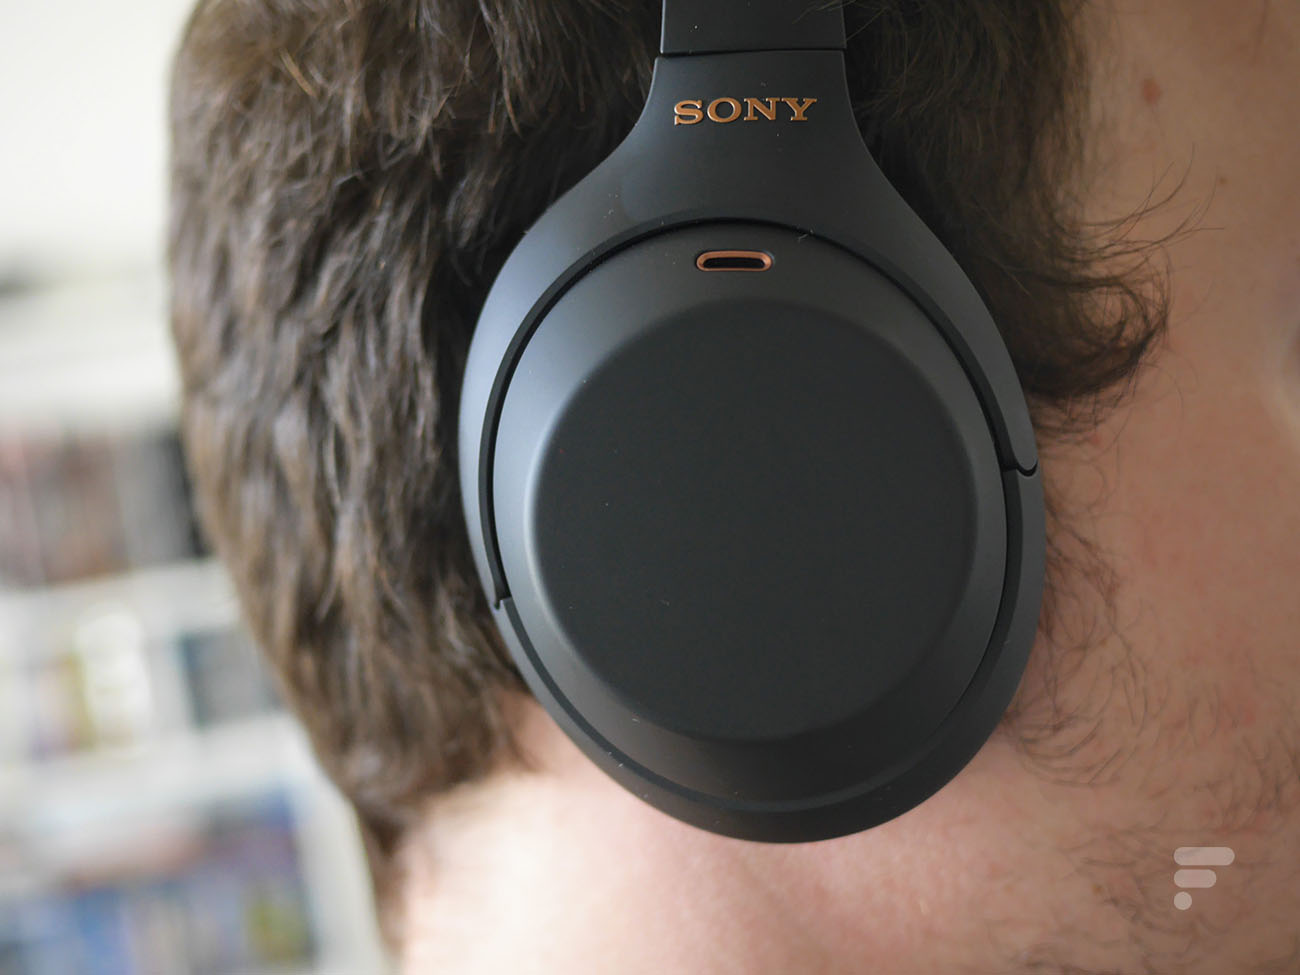 CES 2020 : des écouteurs Bluetooth sportifs avec lecteur MP3 intégré, chez  Audio-Technica